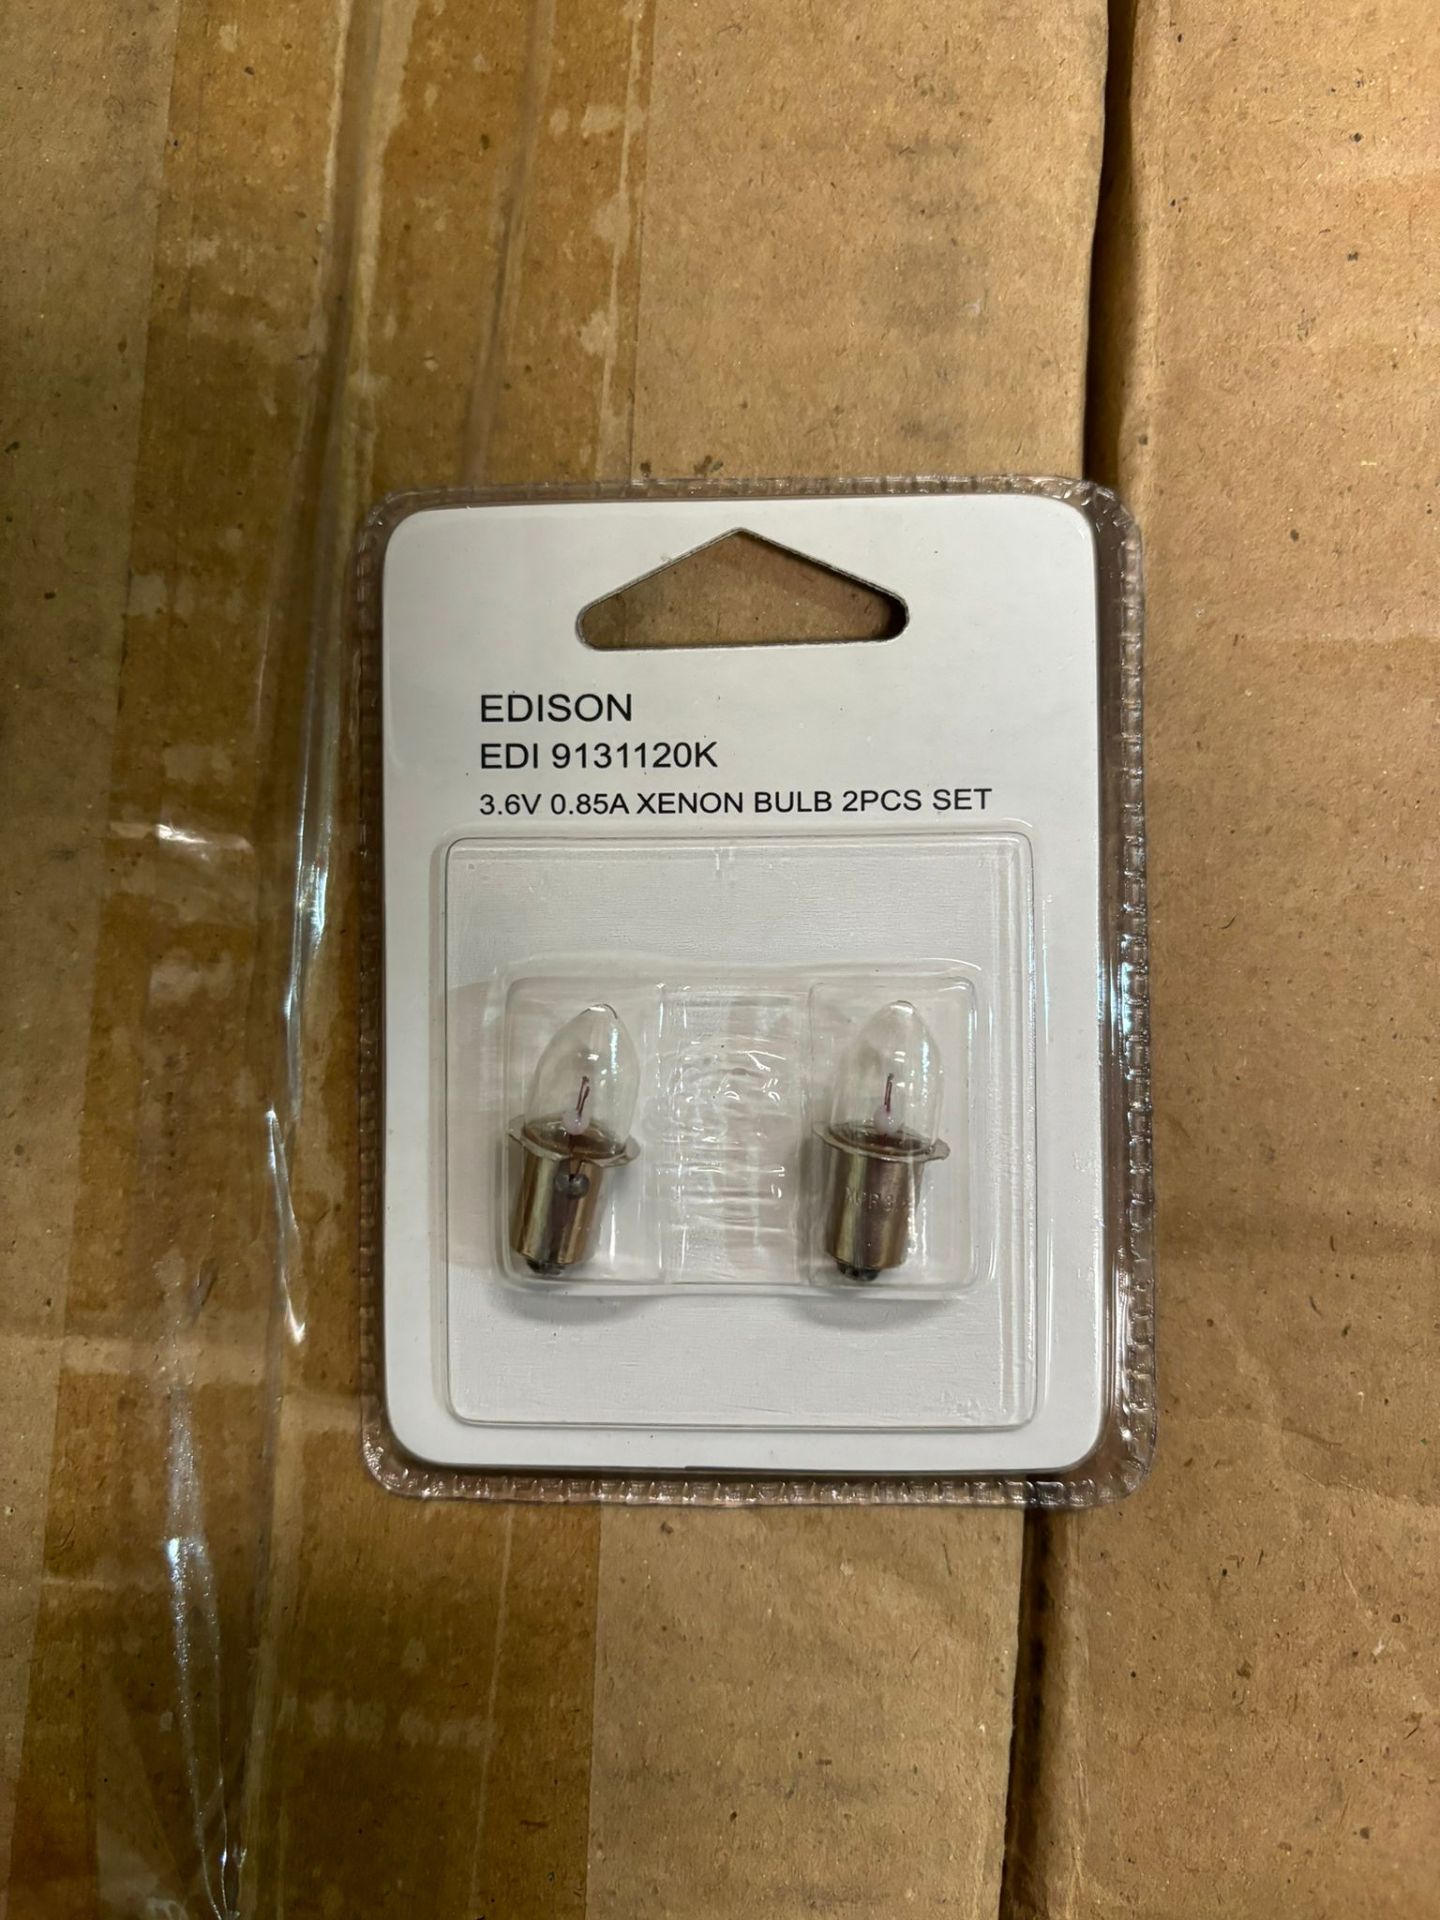 500x Edison EDI9311120K 3.6v 0.85A xenon light bulb 2pcs set